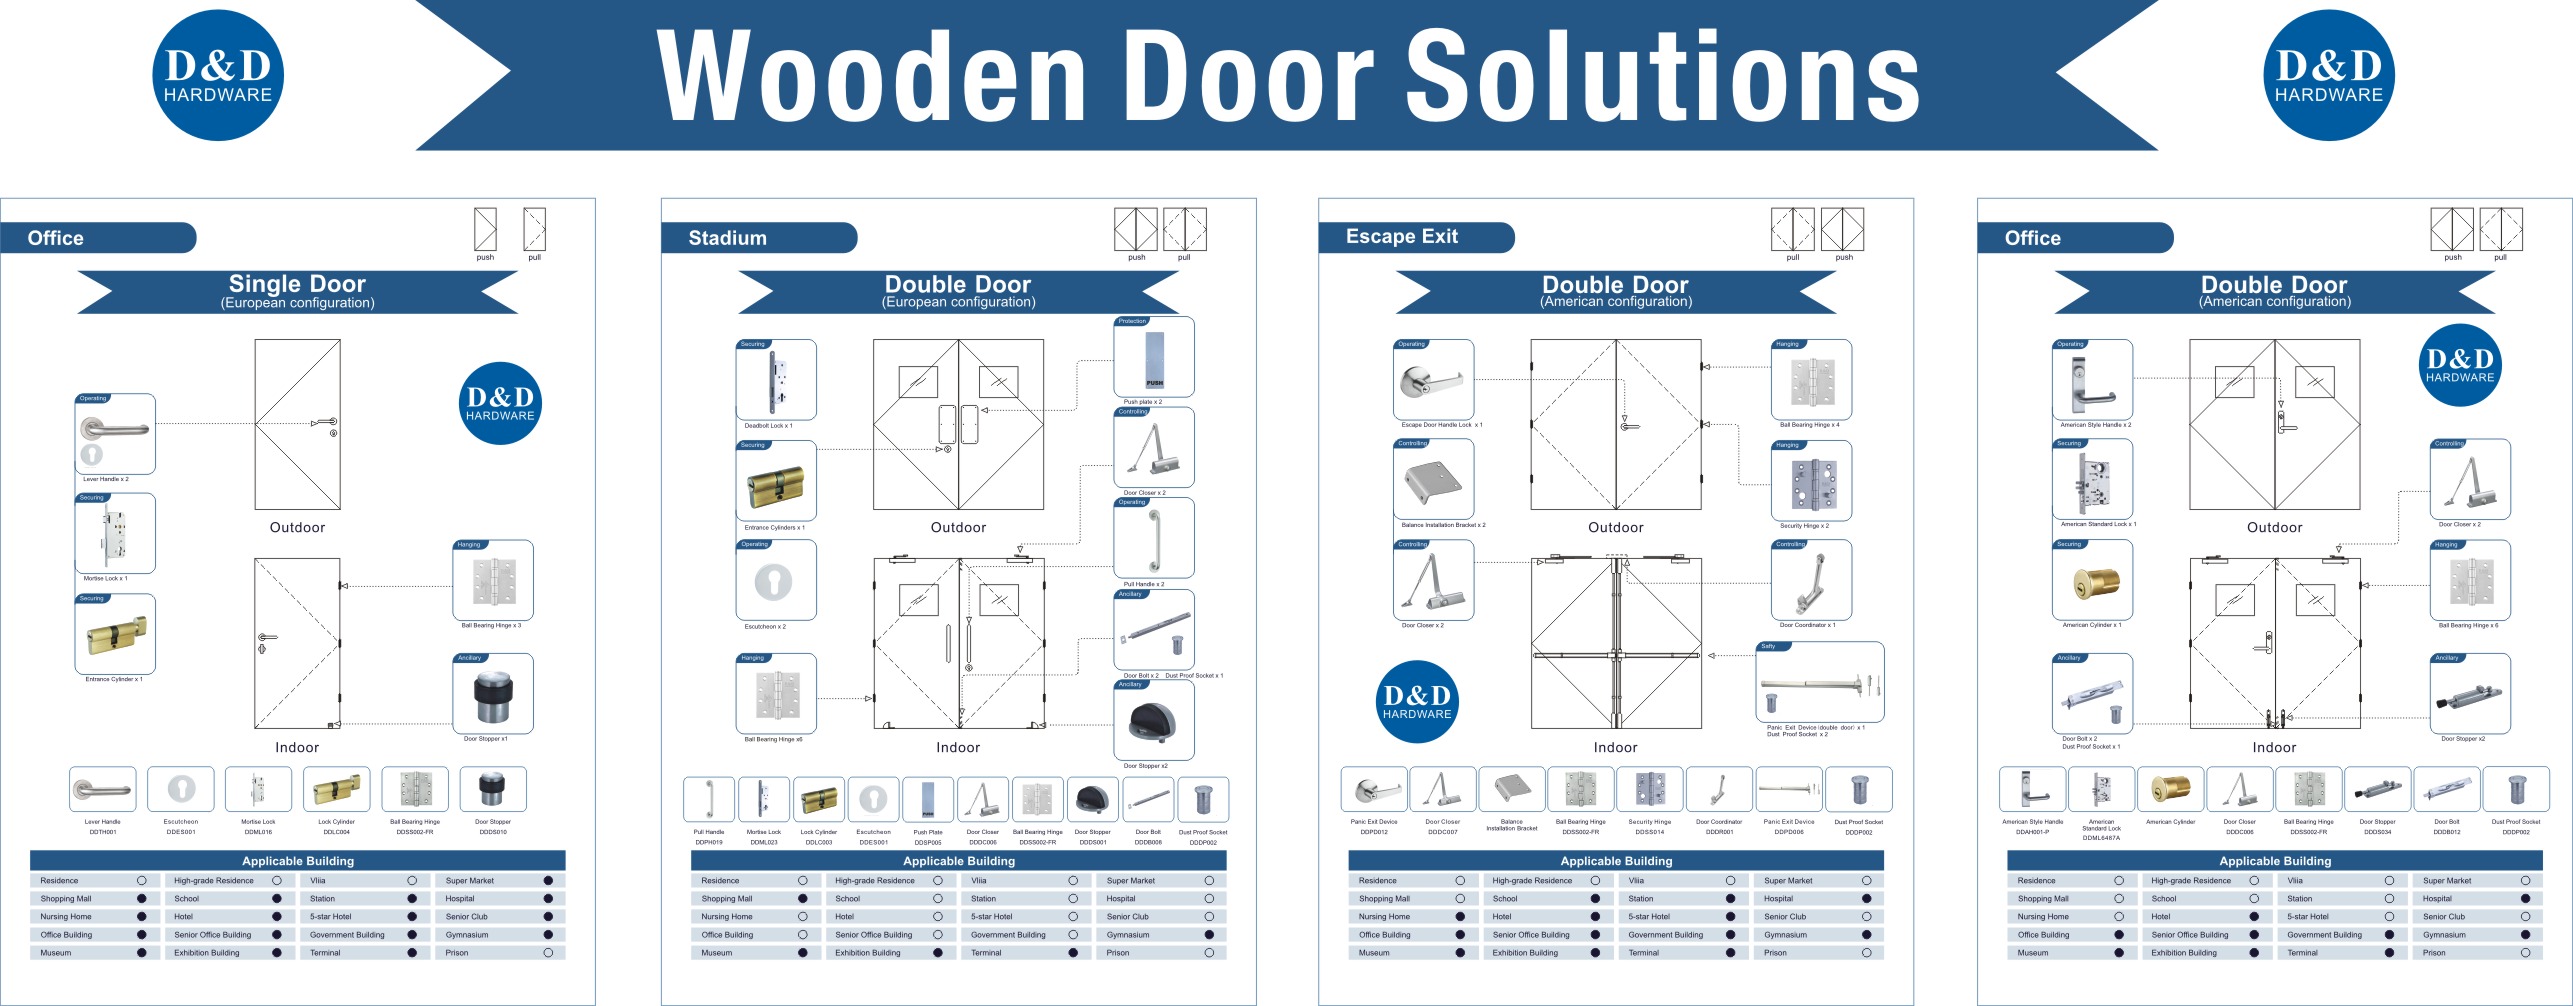 Wooden Door Solutions-D&D Hardware